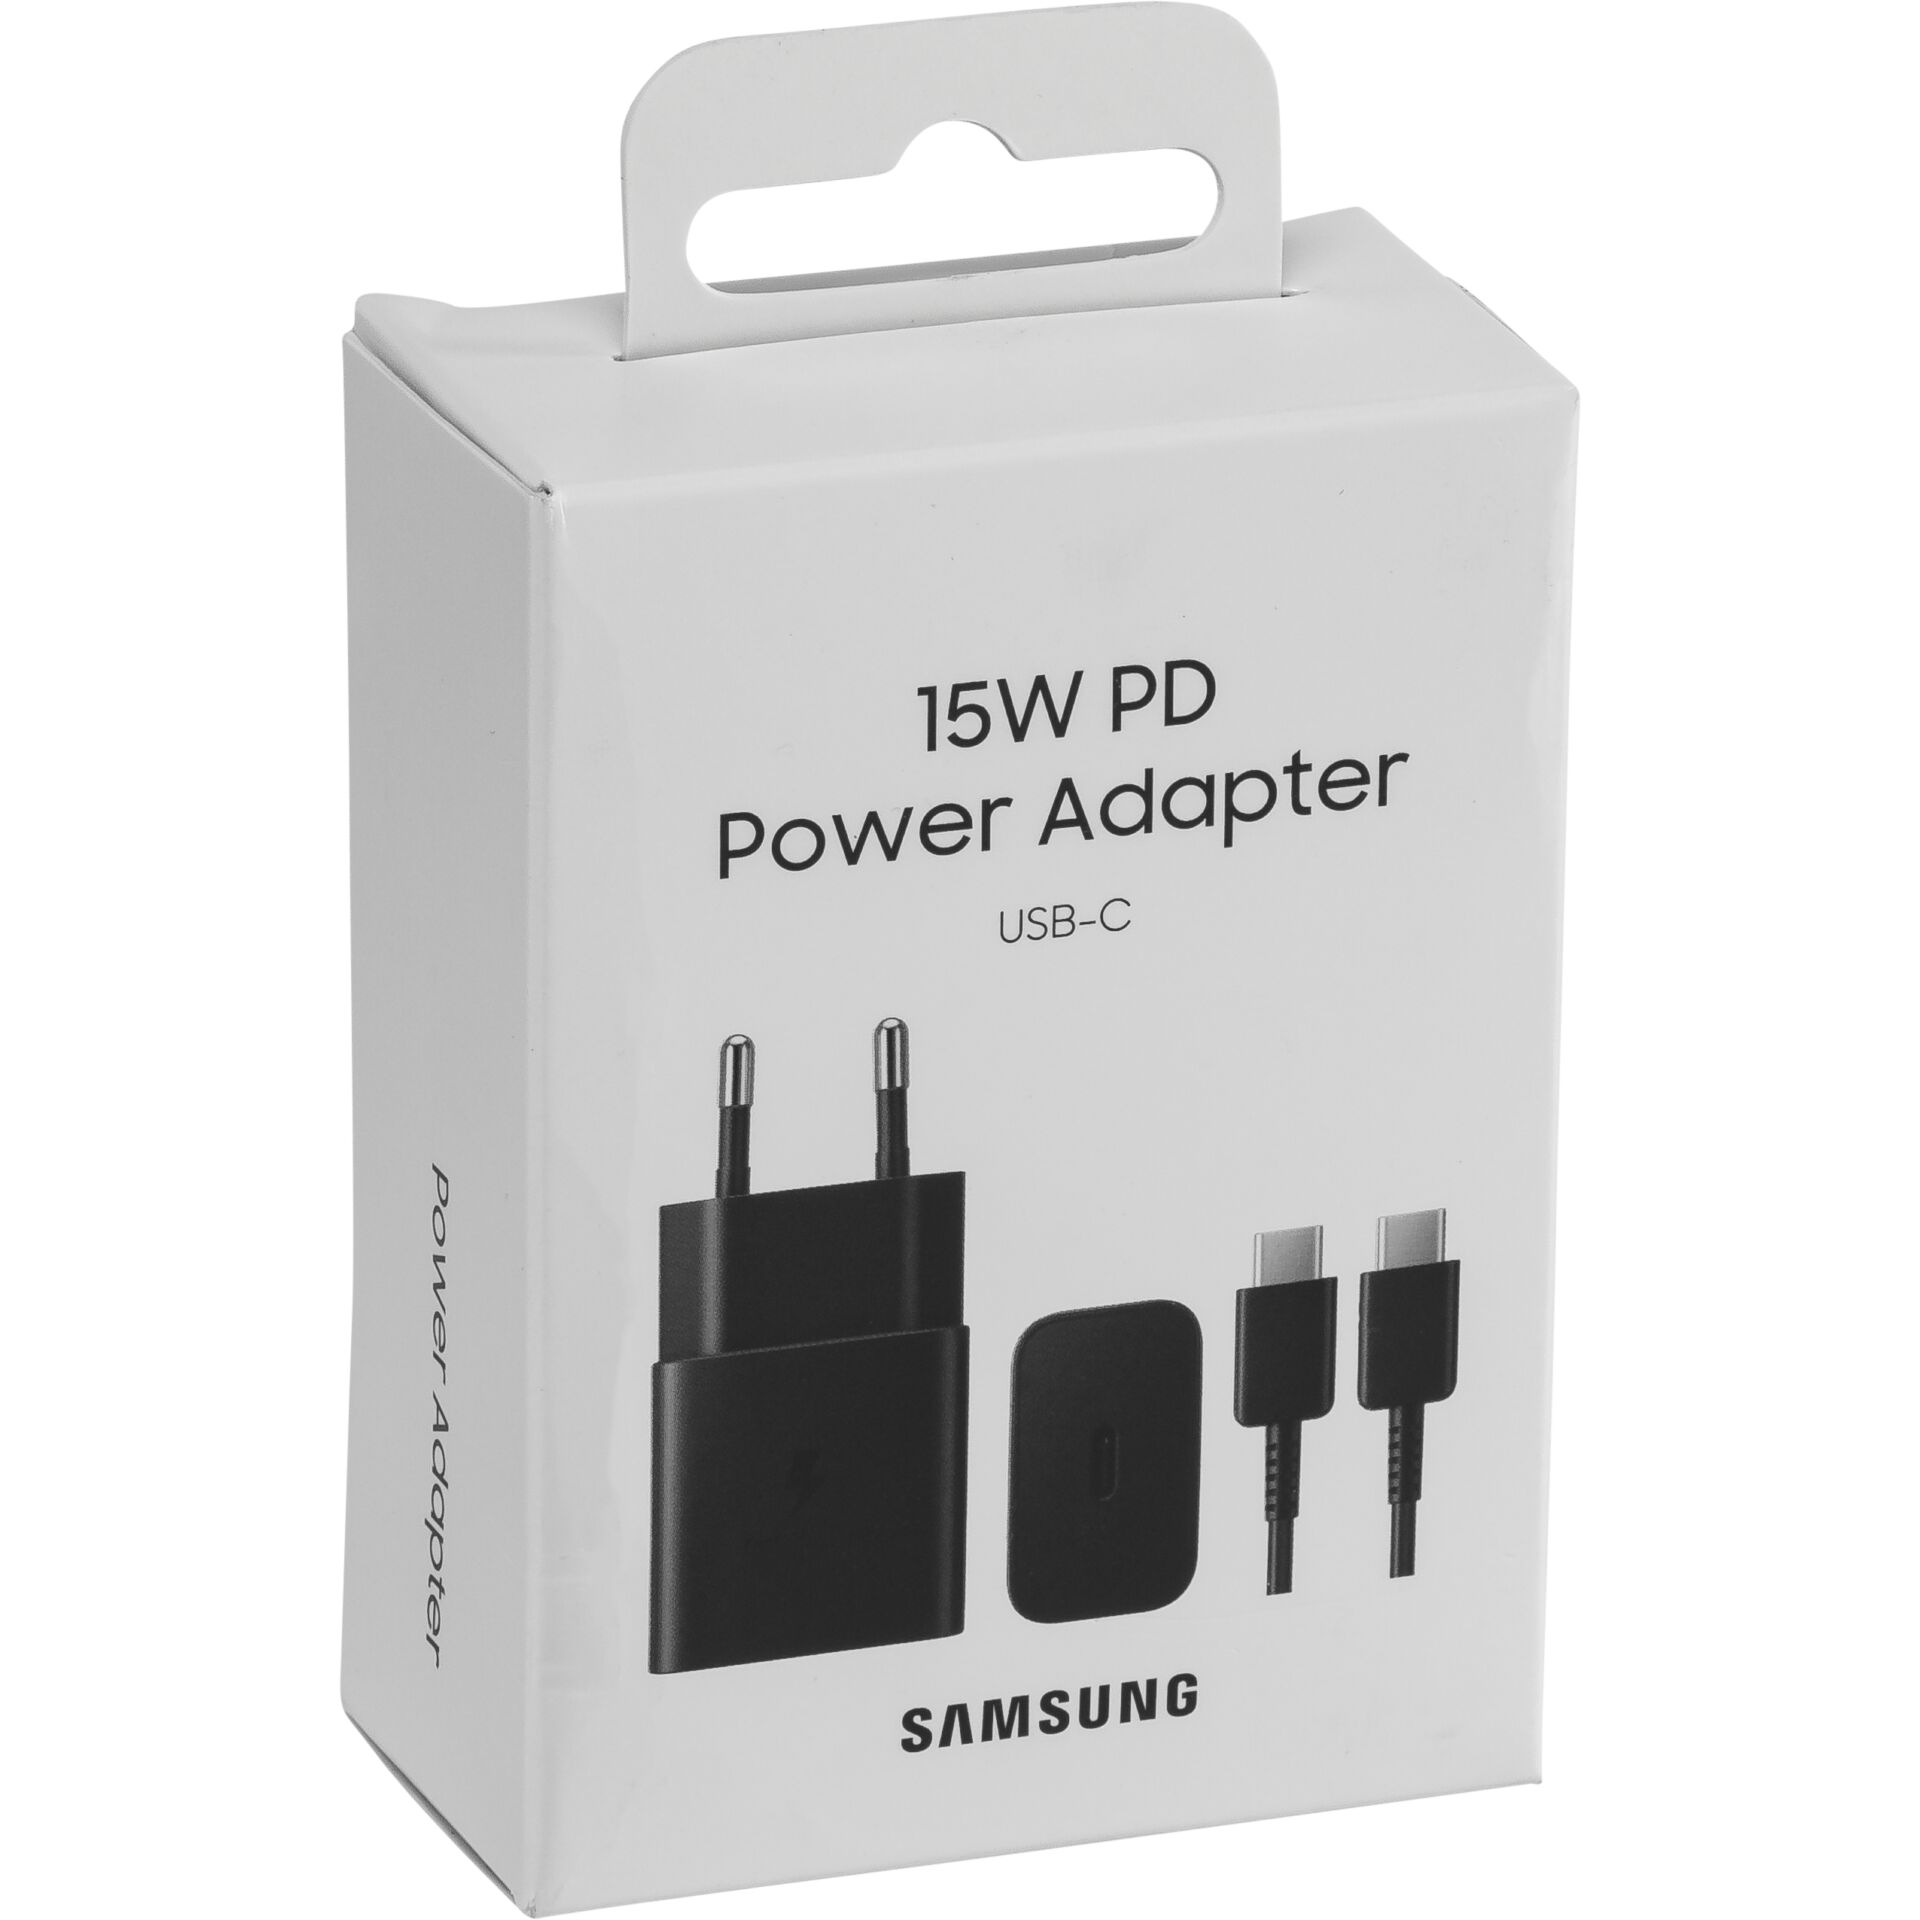 Samsung Power Adapter schwarz inkl. USB-C-Kabel, USB-PD (15W Schnellladefunktion)